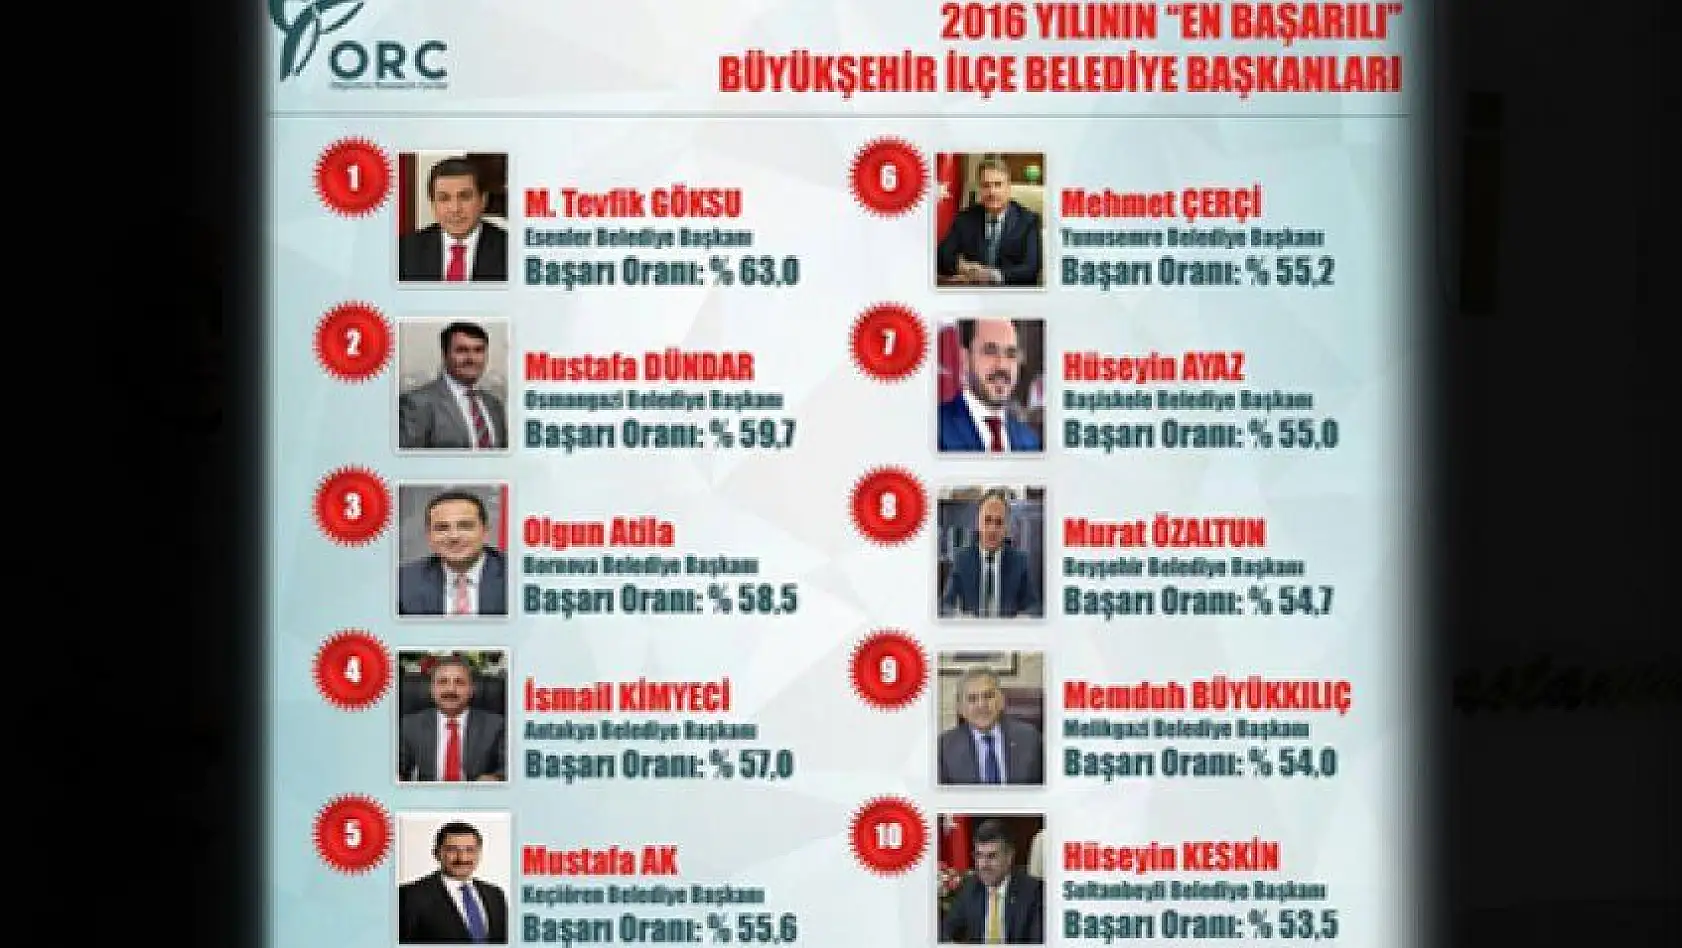 Melikgazi Türkiye'de 9. Kayseri'de 1. sırada